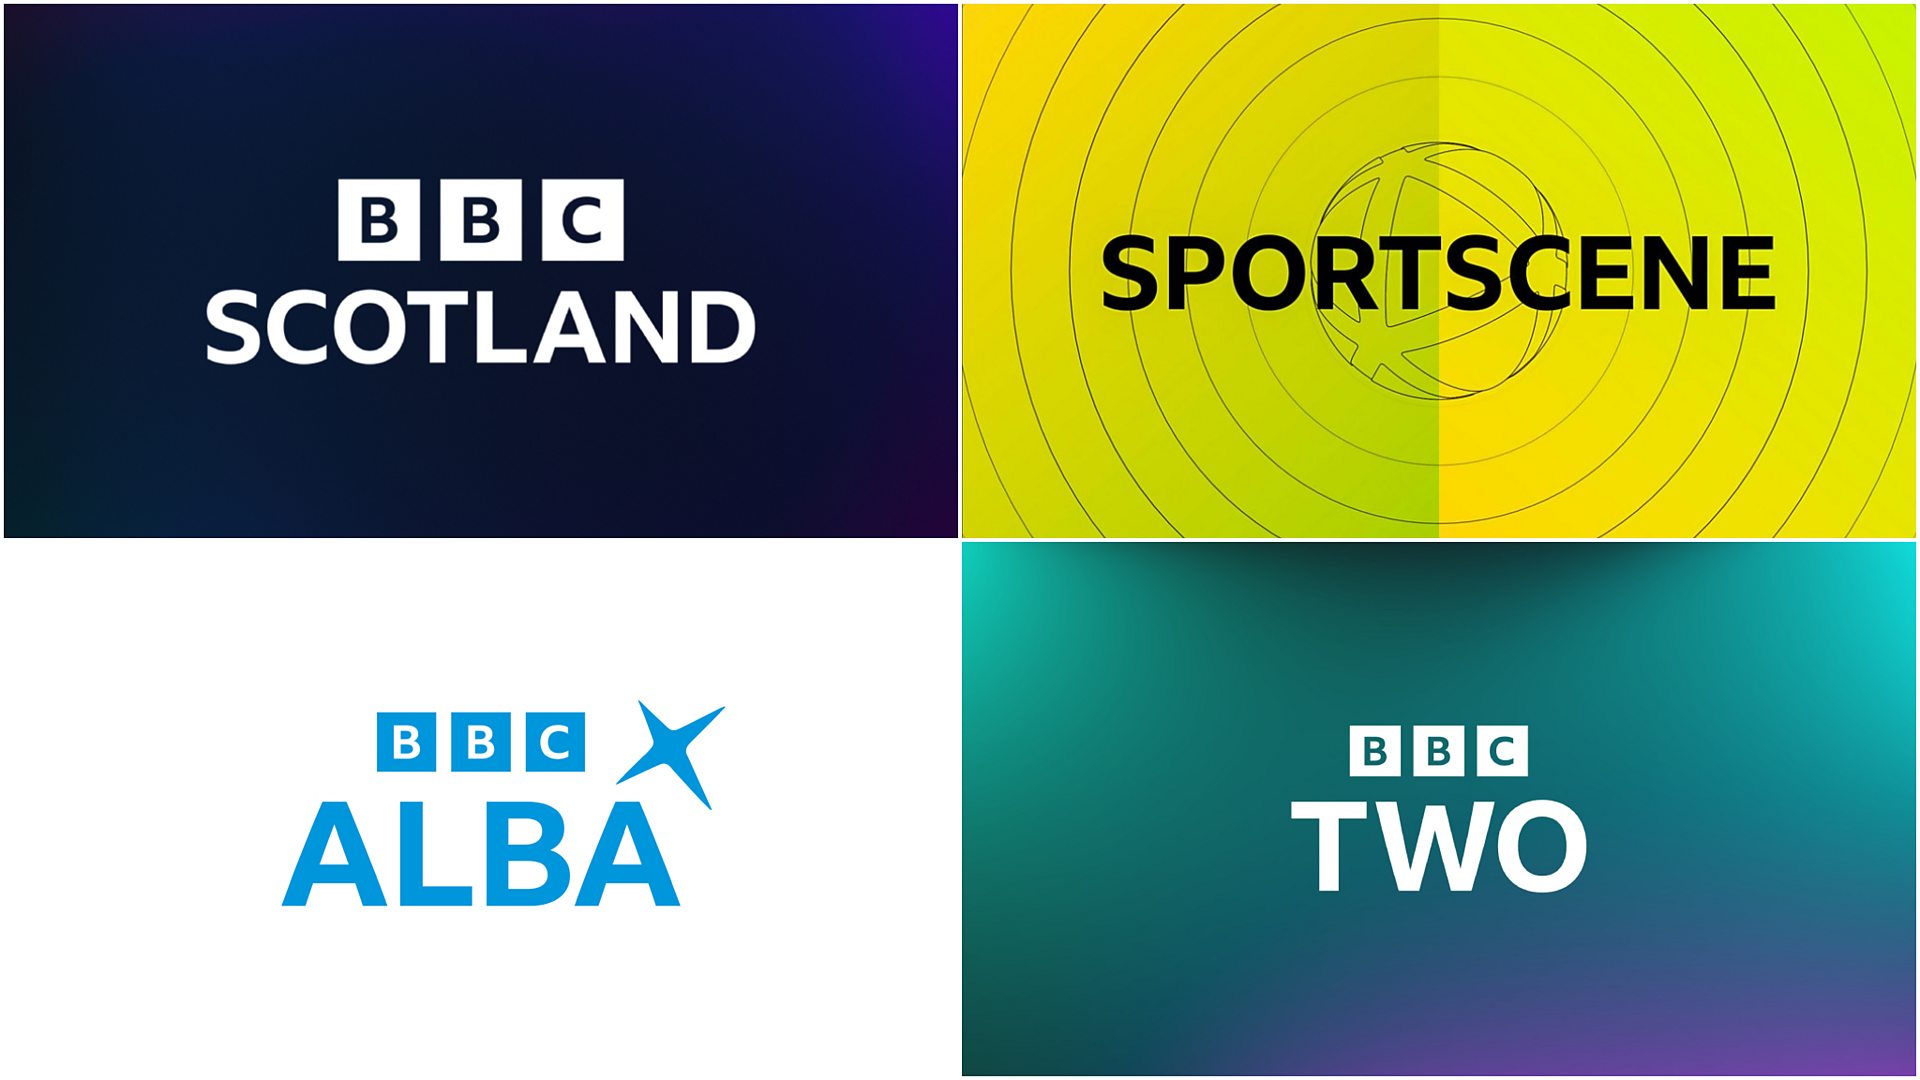 Live verslaggeving van vijf groepswedstrijden van Schotland in de Women’s UEFA Nations League zal worden uitgezonden op BBC-kanalen na de rechtenovereenkomst met de Schotse FA.